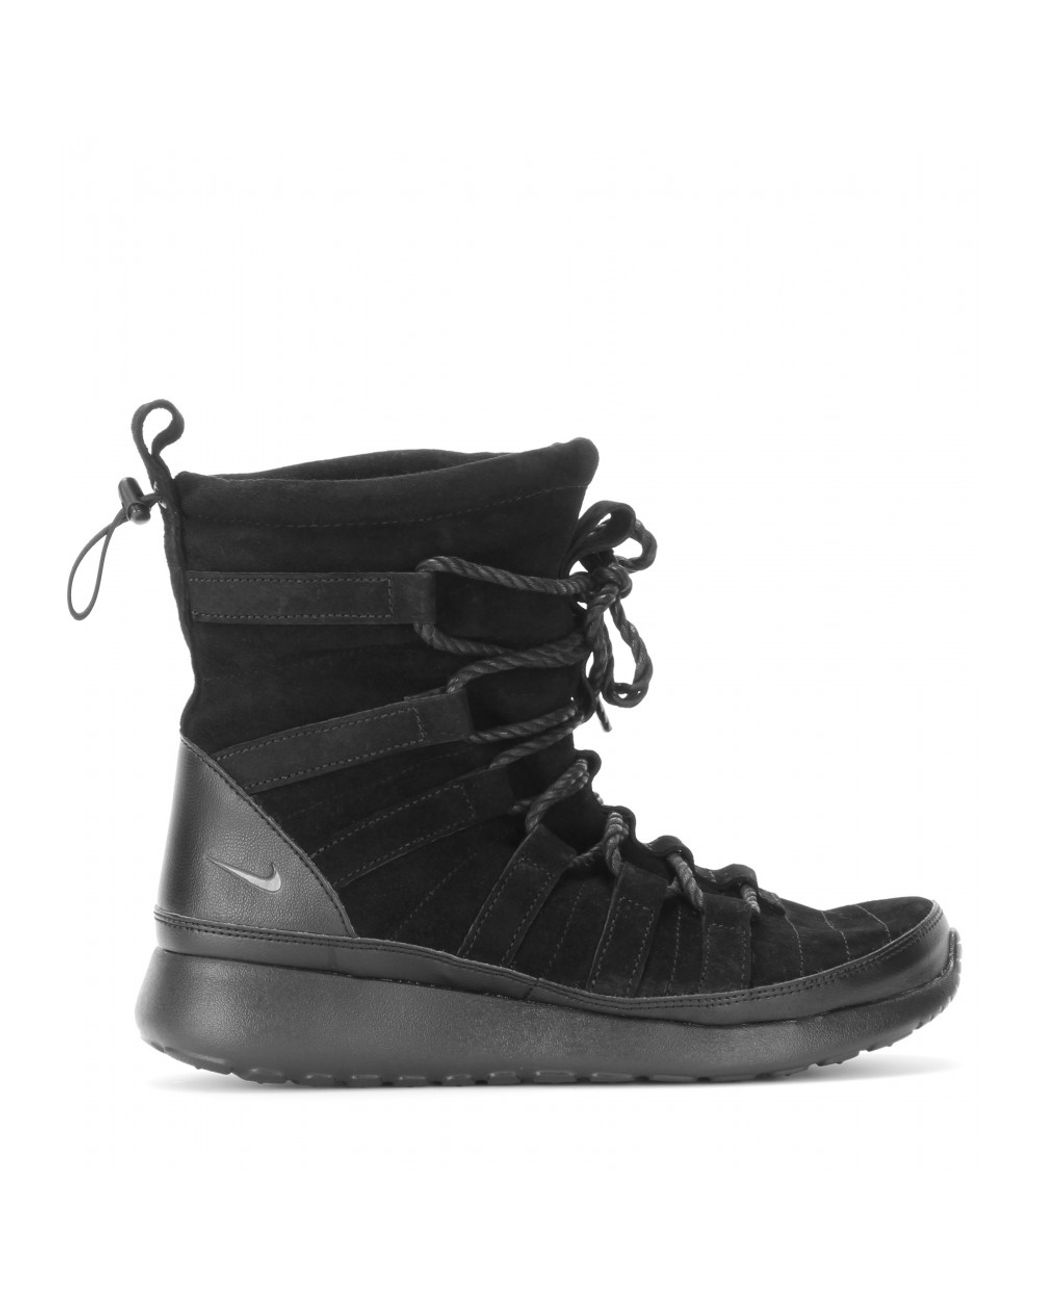 Nike Roshe One Hi Suede Sneaker Boots in Black | Lyst